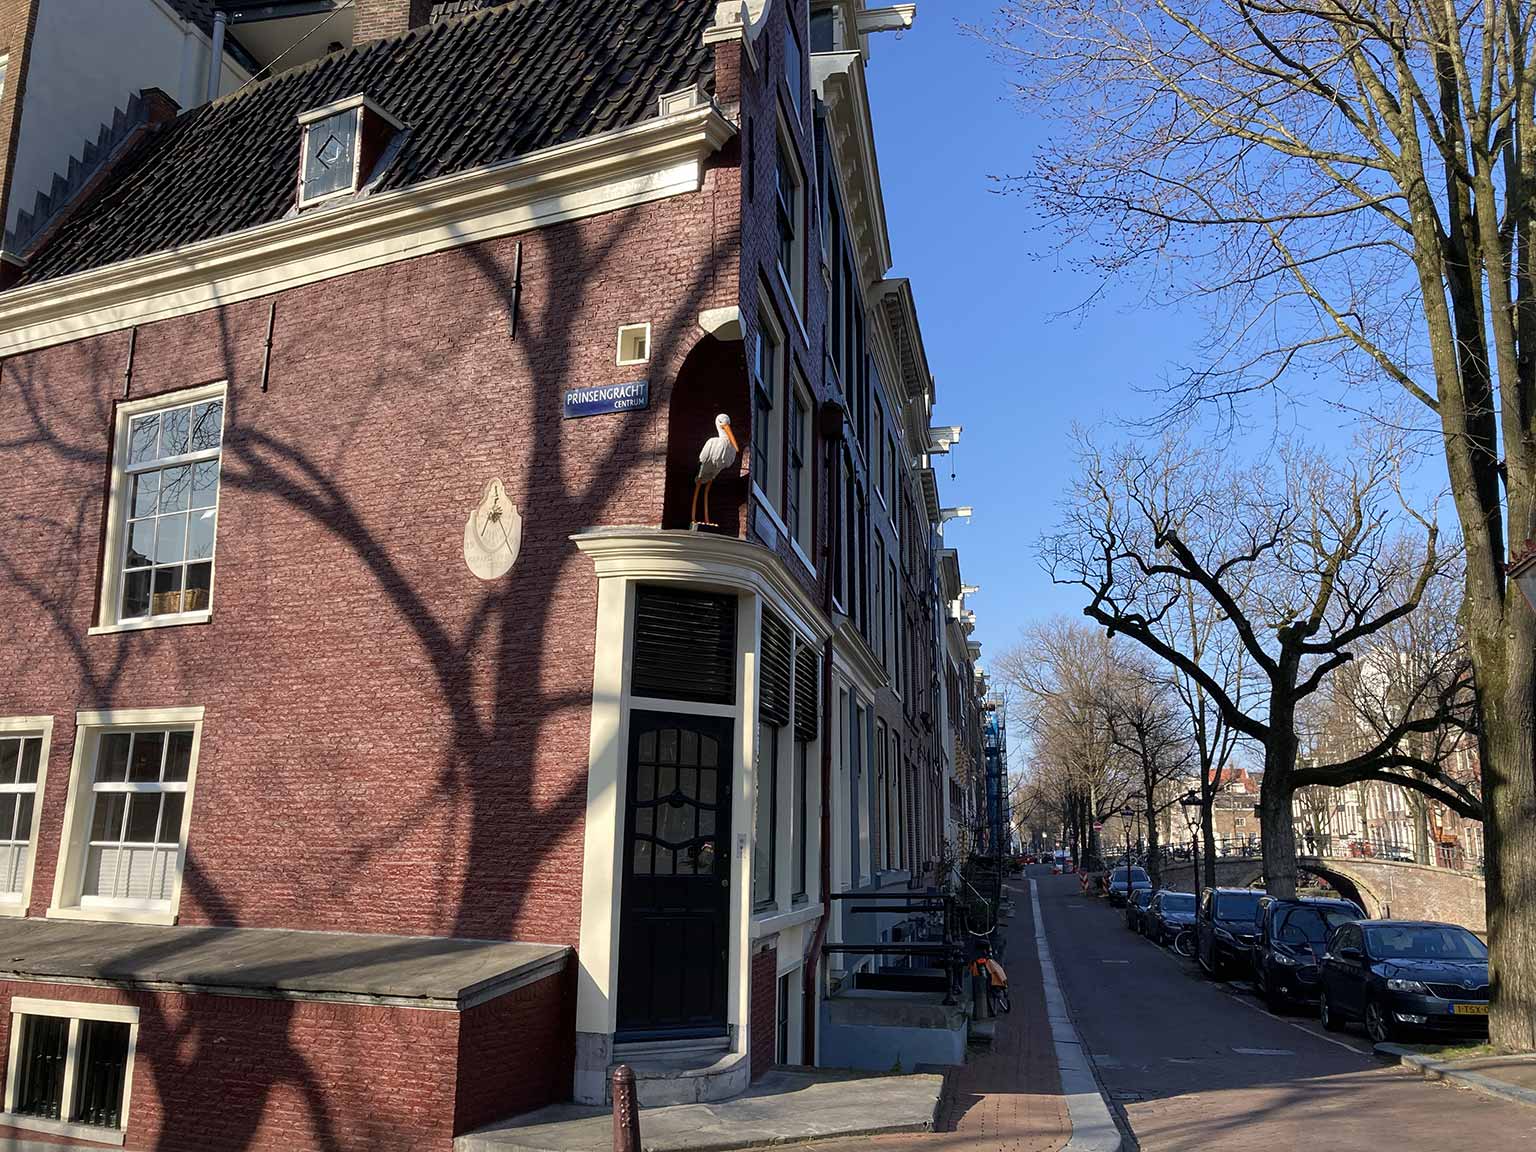 Huis met de Ooievaar, Reguliersgracht 92, Amsterdam